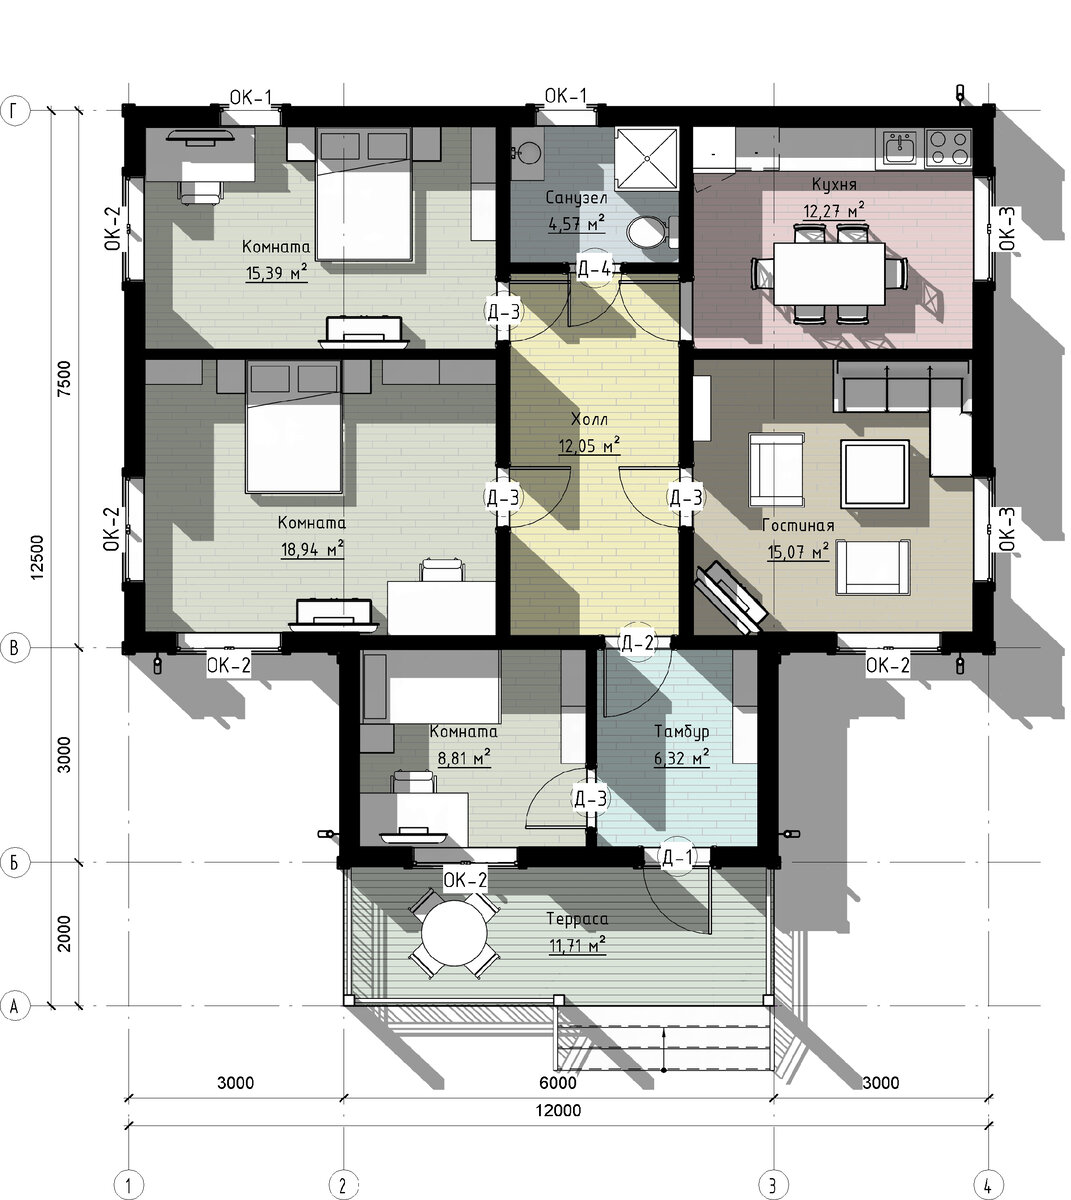 Дизайн дома 100 кв м одноэтажный с 3 спальнями